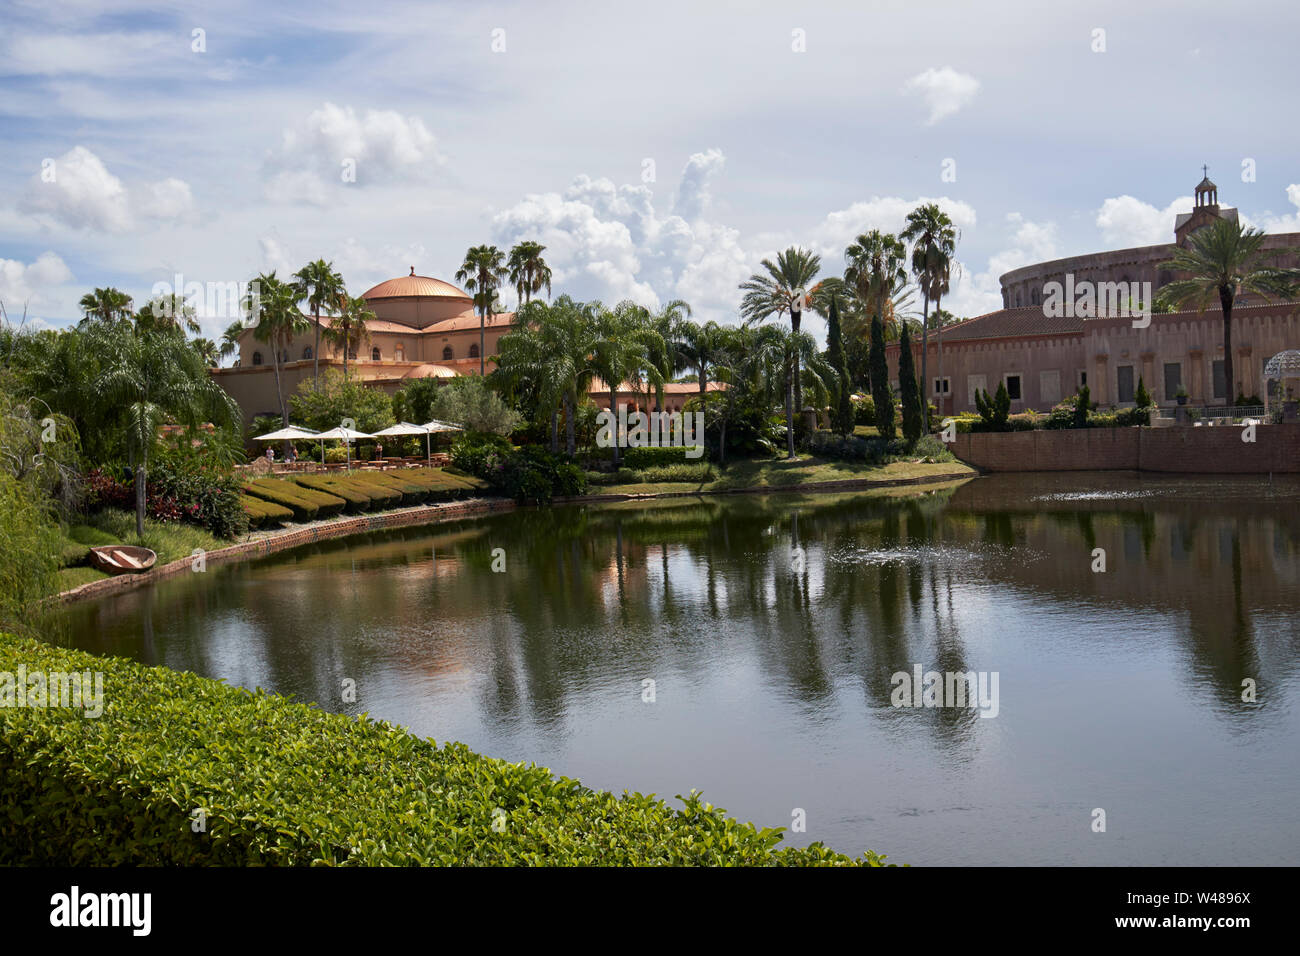 La terra santa di esperienza di Orlando in Florida fl usa stati uniti d'America Foto Stock